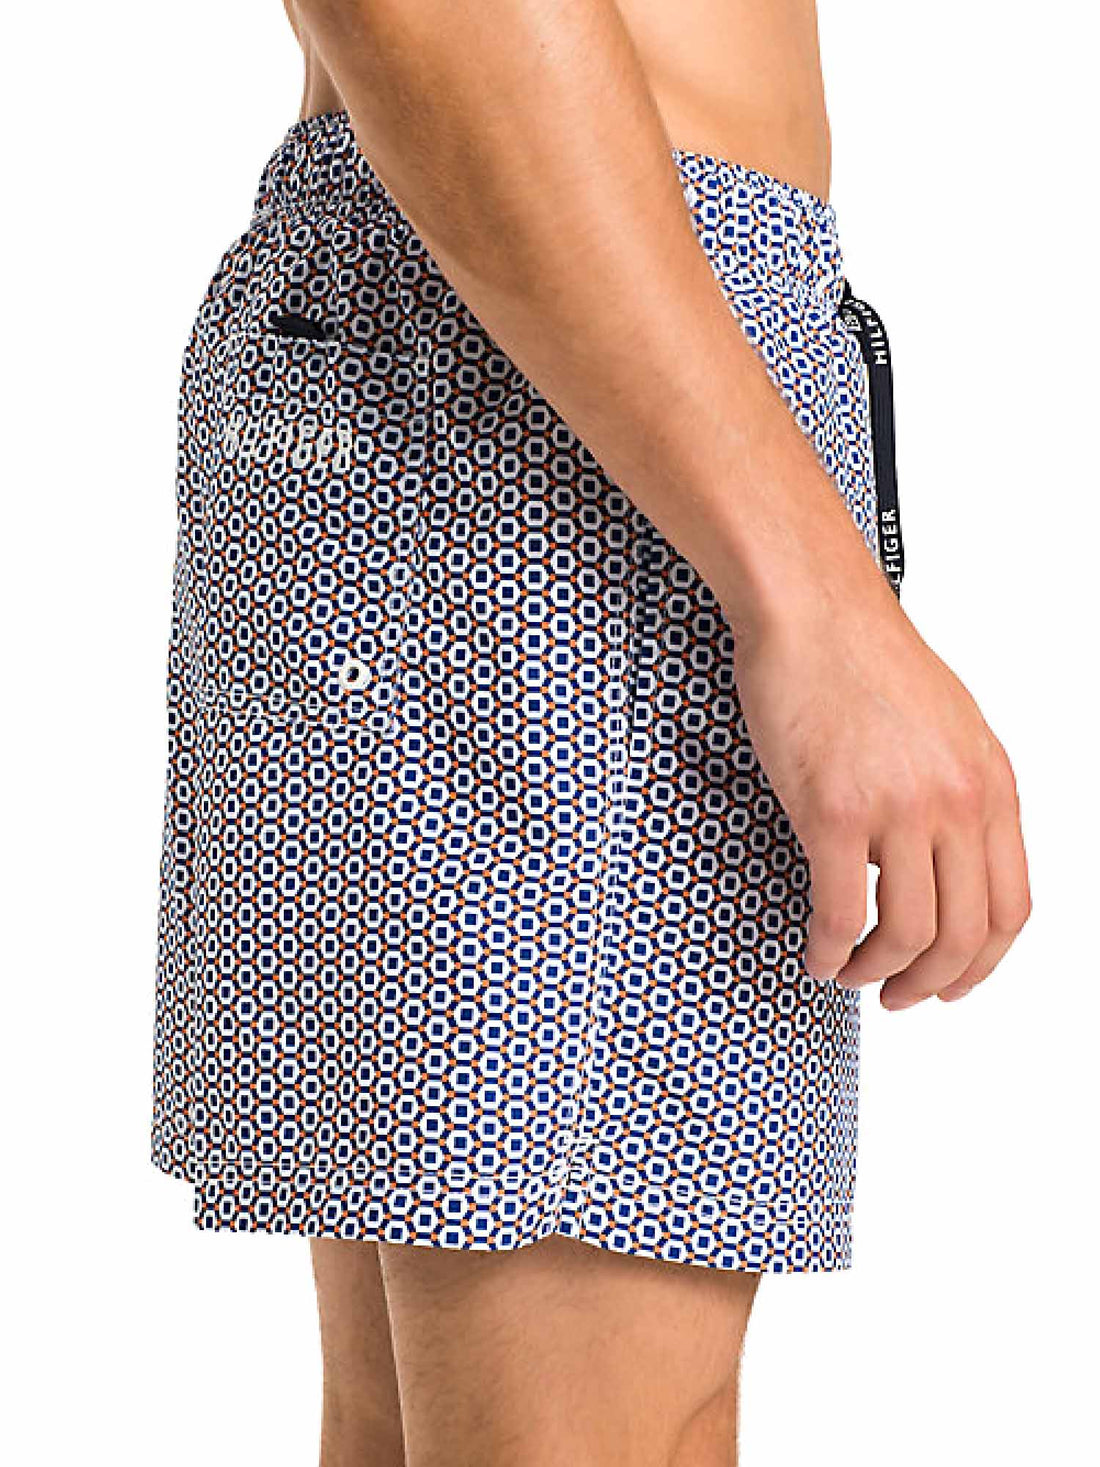 Costumi Blu Tommy Hilfiger Underwear